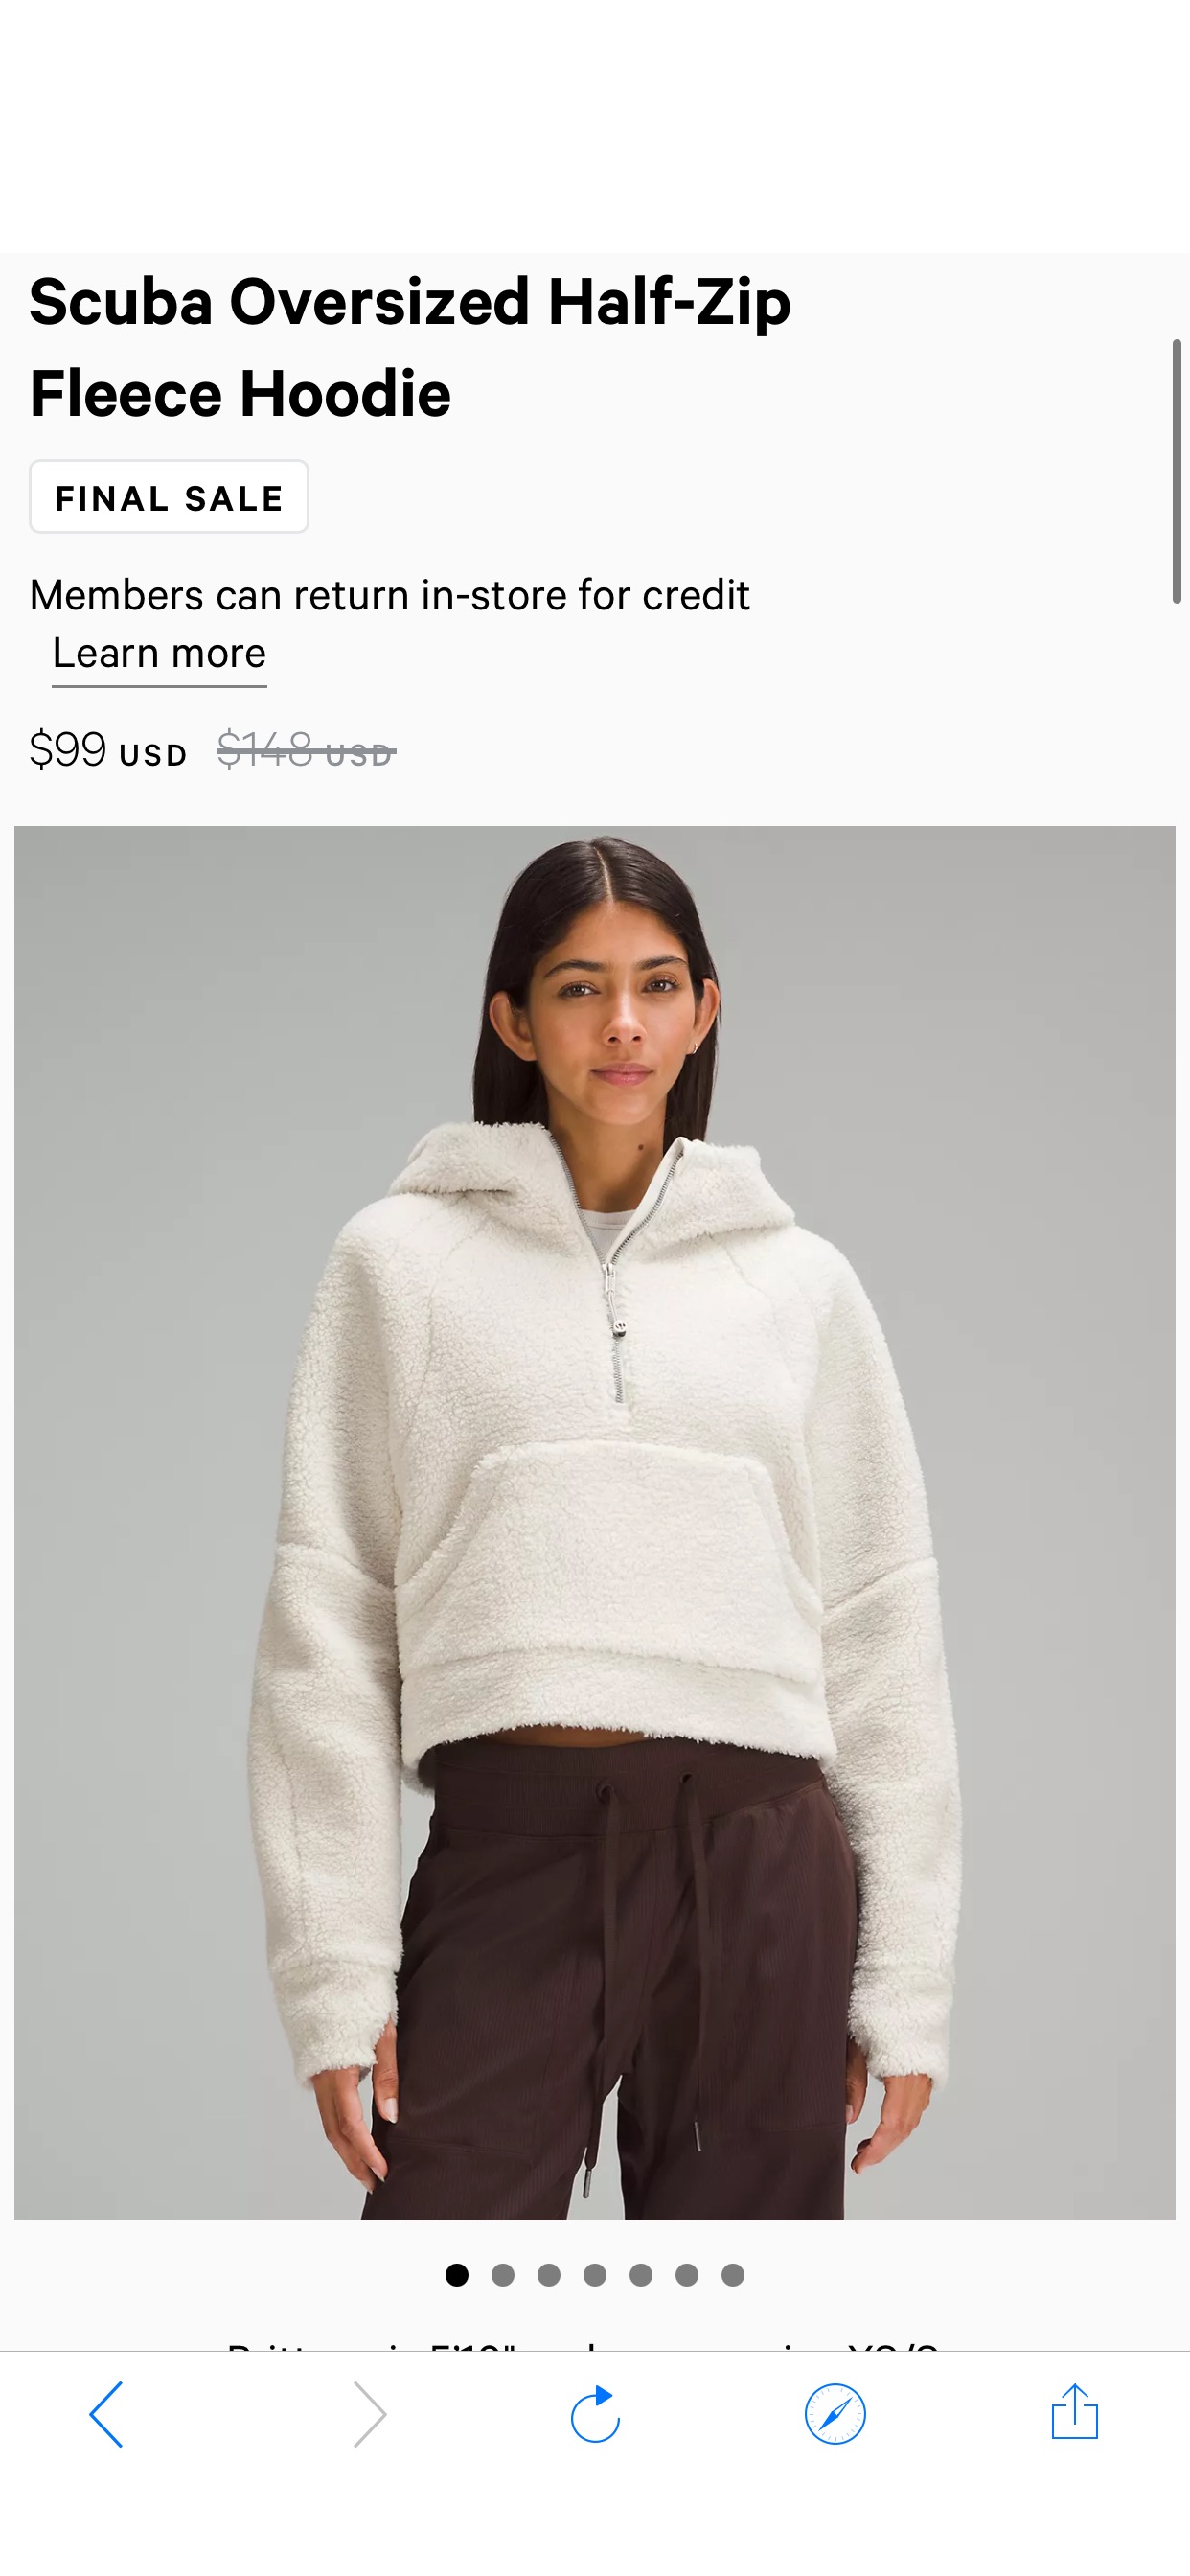 Scuba Oversized Half-Zip Fleece Hoodie | Women's Hoodies & Sweatshirts | lululemon Scuba Oversized Half-Zip Fleece Hoodie
原價148，現在才99 大热色 Bone 还有xs/s碼全